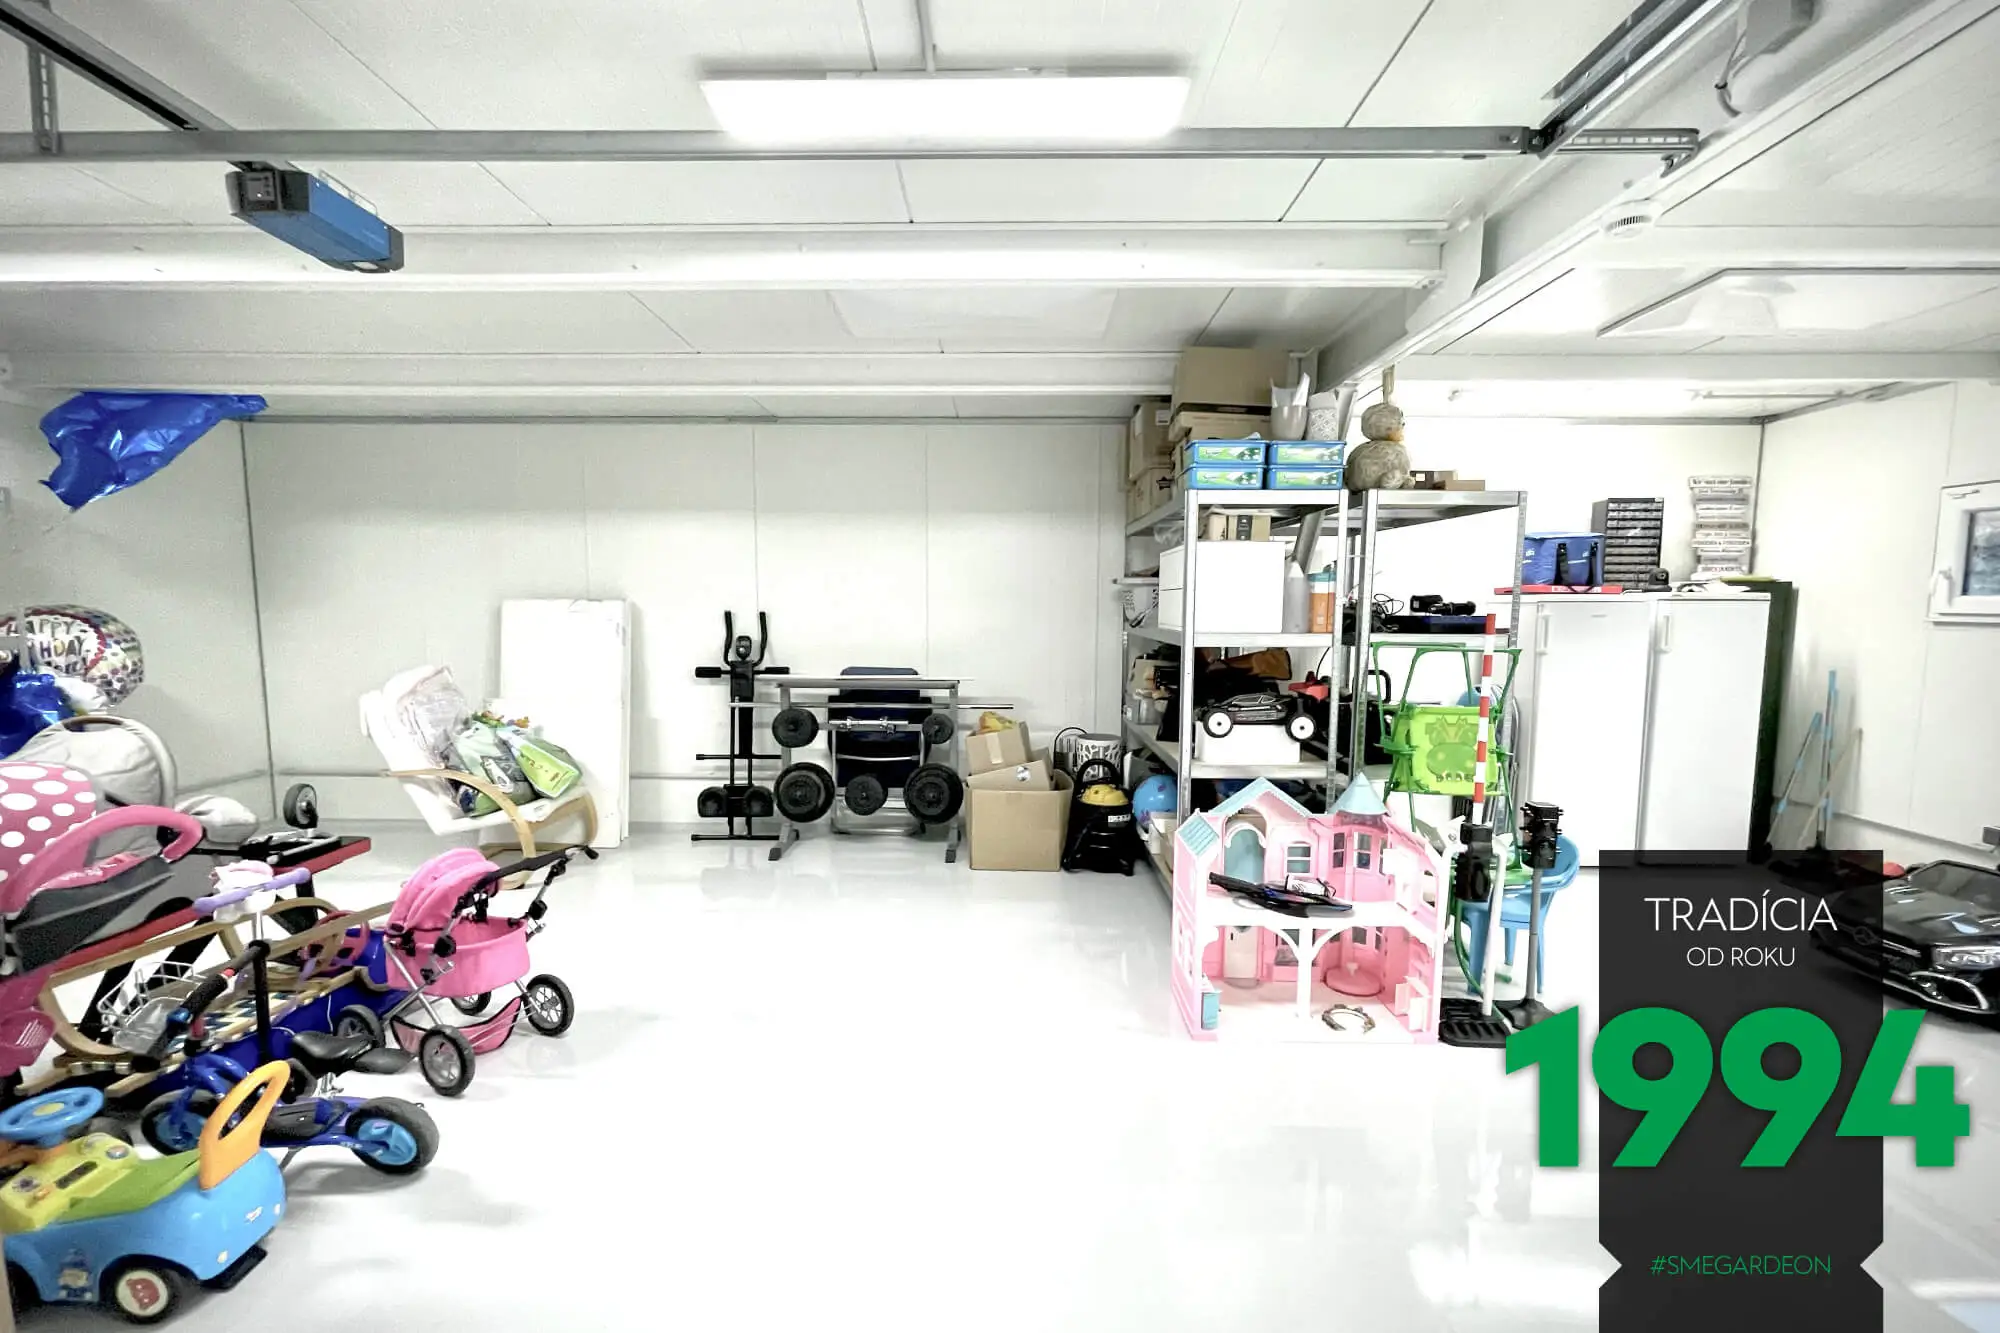 Police, lednice, kola, hračky uvnitř montované stavby